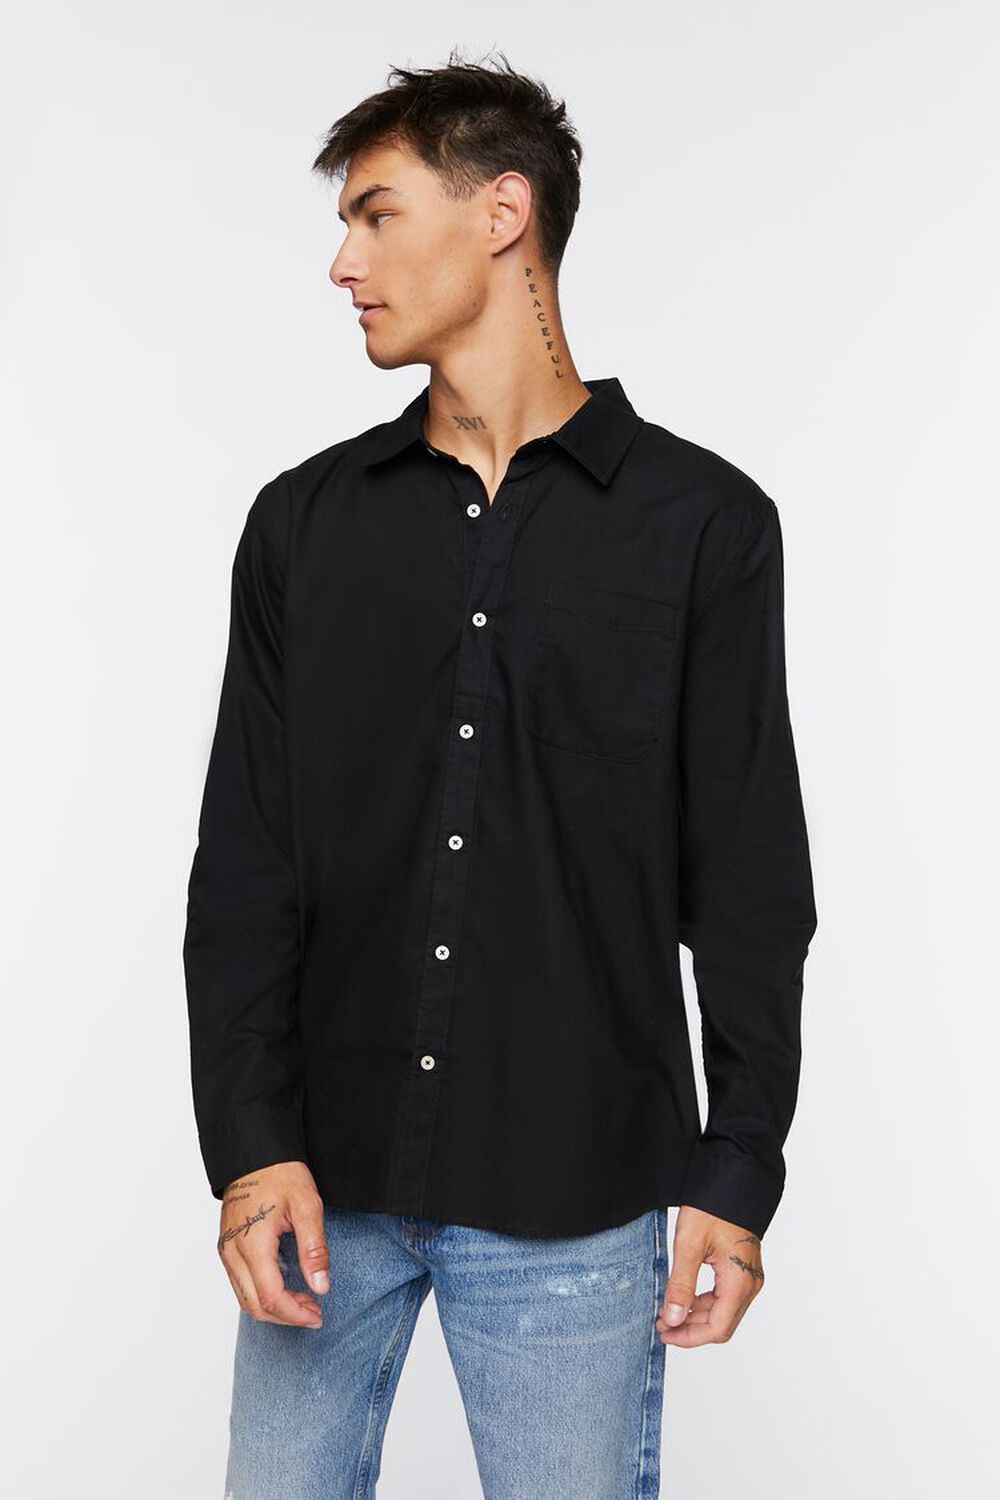 BLACK Cotton Button-Up Shirt, image 1